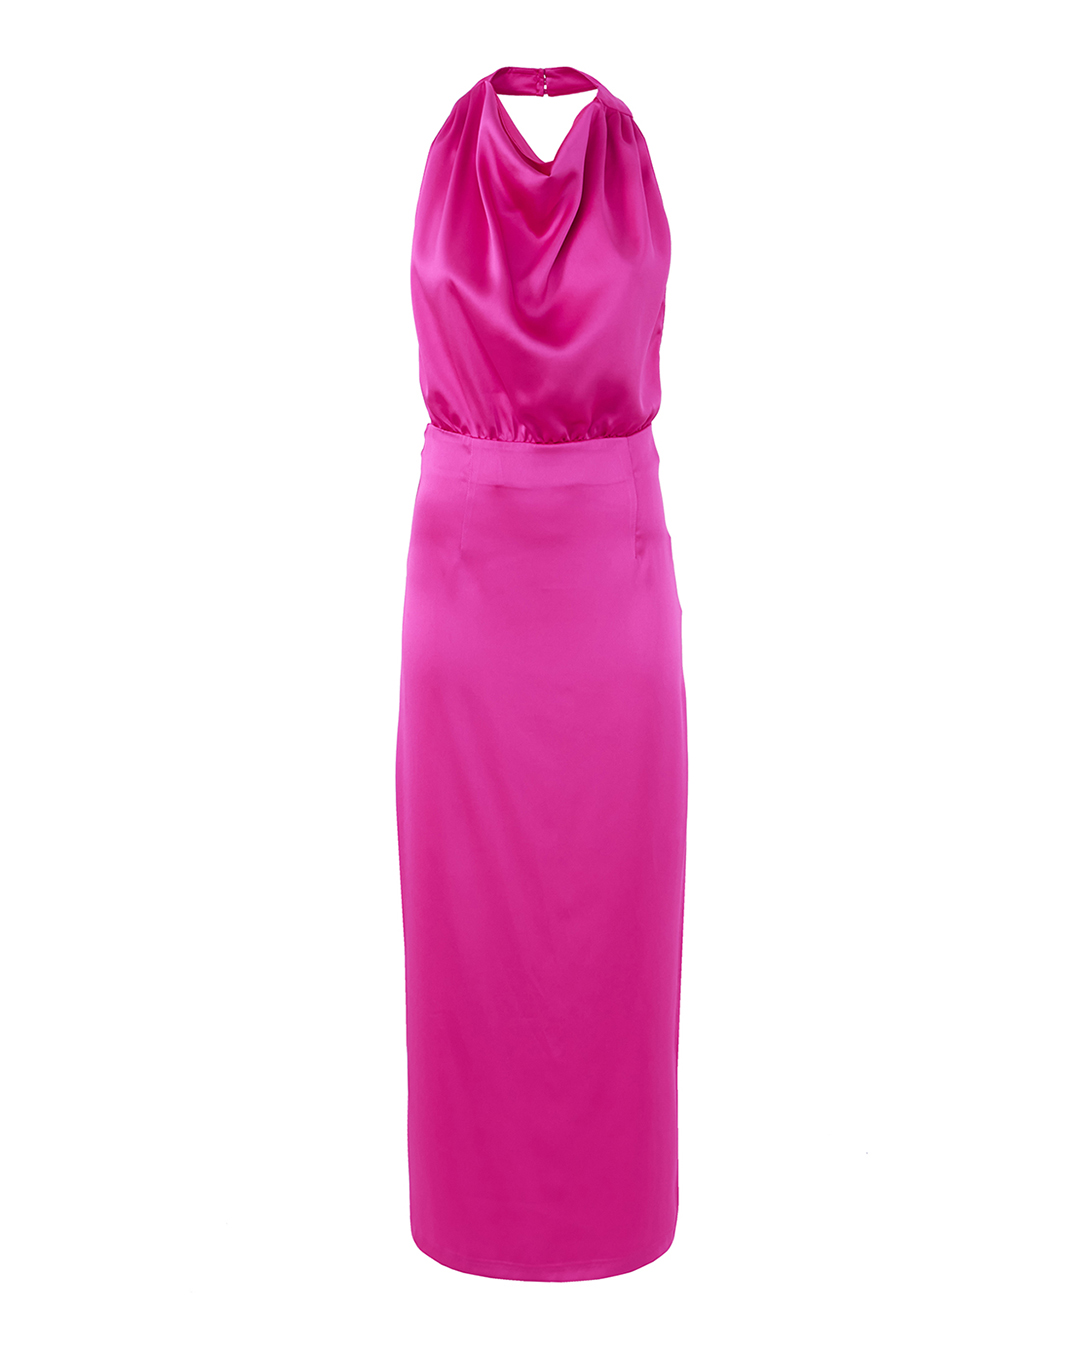 платье ACTUALEE 003804 розовый 40, размер 40 - фото 1